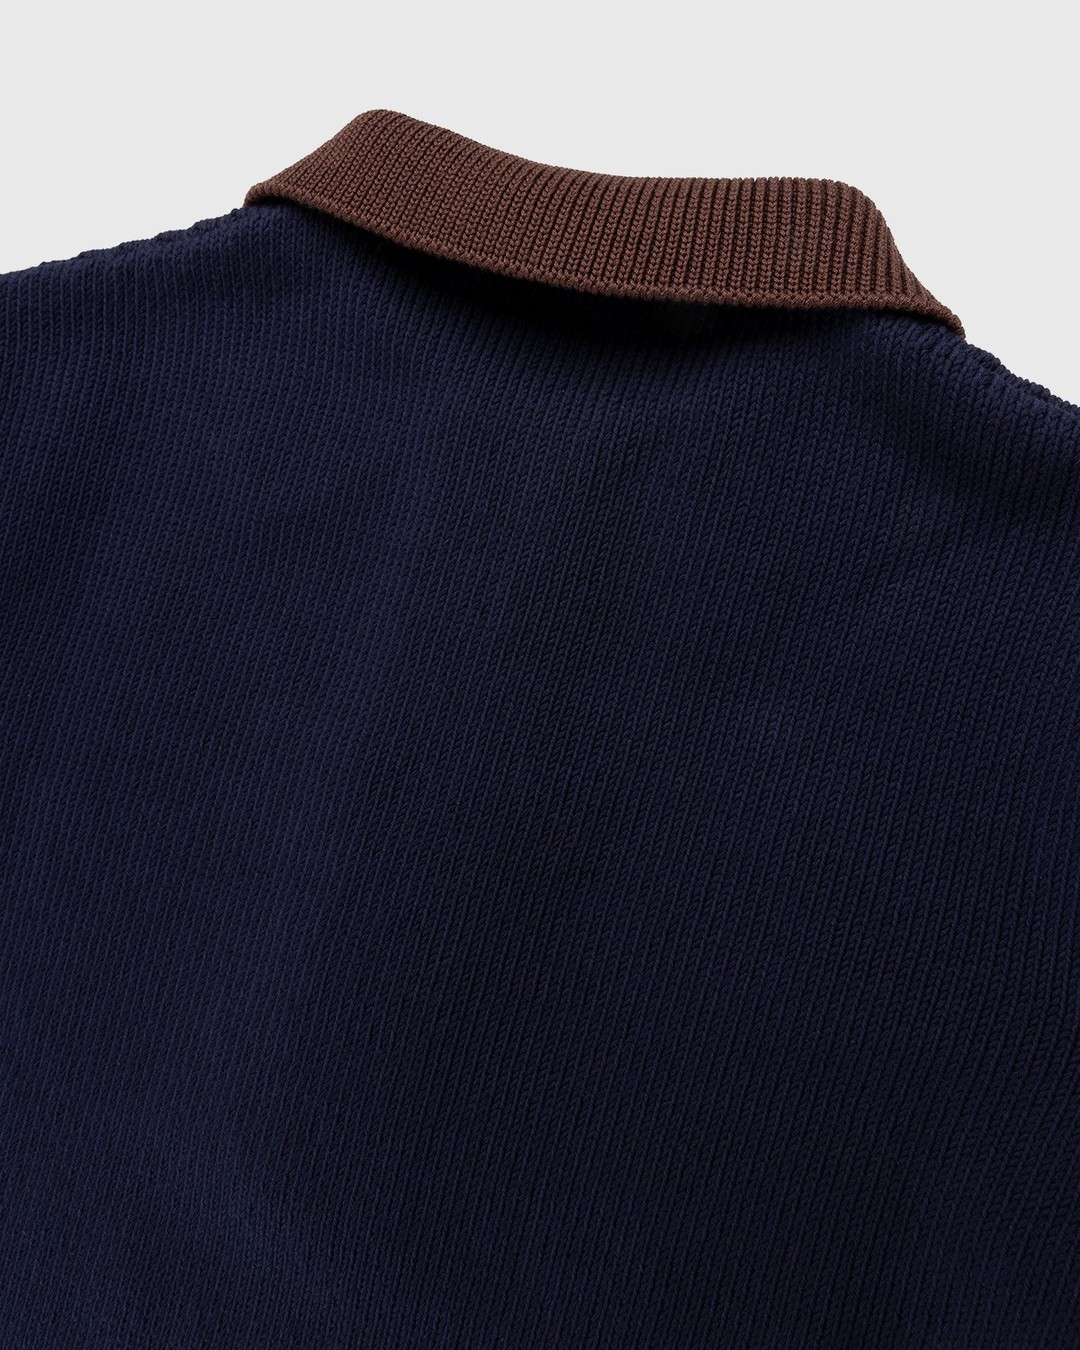 Jil Sander – Short Sleeve Knit Shirt Dark Blue - Shirts - Blue - Image 3